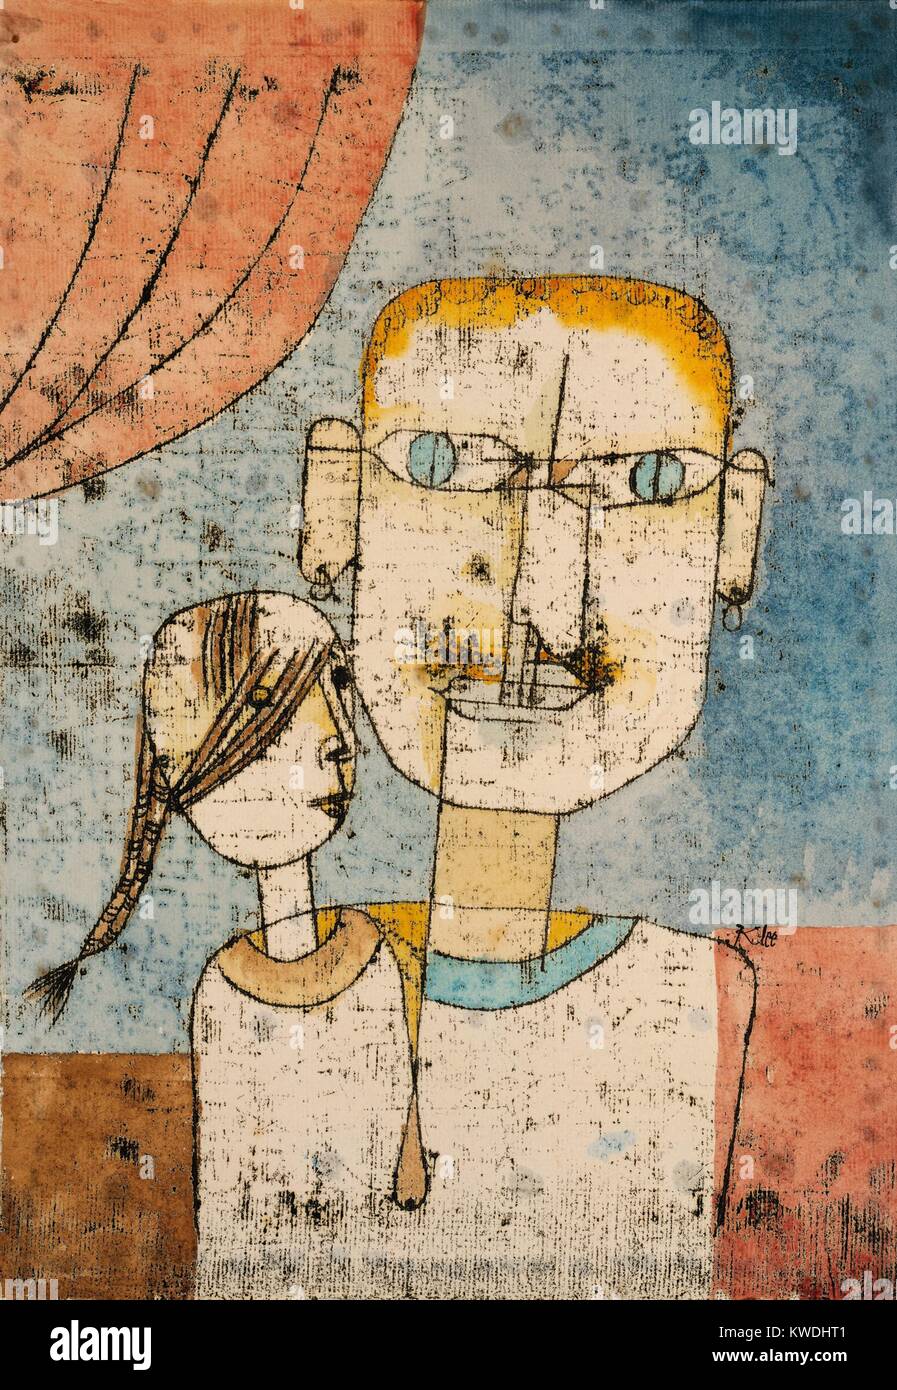 ADAM UND EVA, von Paul Klee, 1921, Schweizer Zeichnung, Aquarell und Tusche auf Papier. Mit surrealen Bildern, Klee schildert Eva als Kind, noch zu Adams Rippe, aus denen Sie wuchs. Adam ist ein breites, erwachsene Mann, Sport Ohrringe und einen Schnurrbart (BSLOC 2017 7 19) Stockfoto